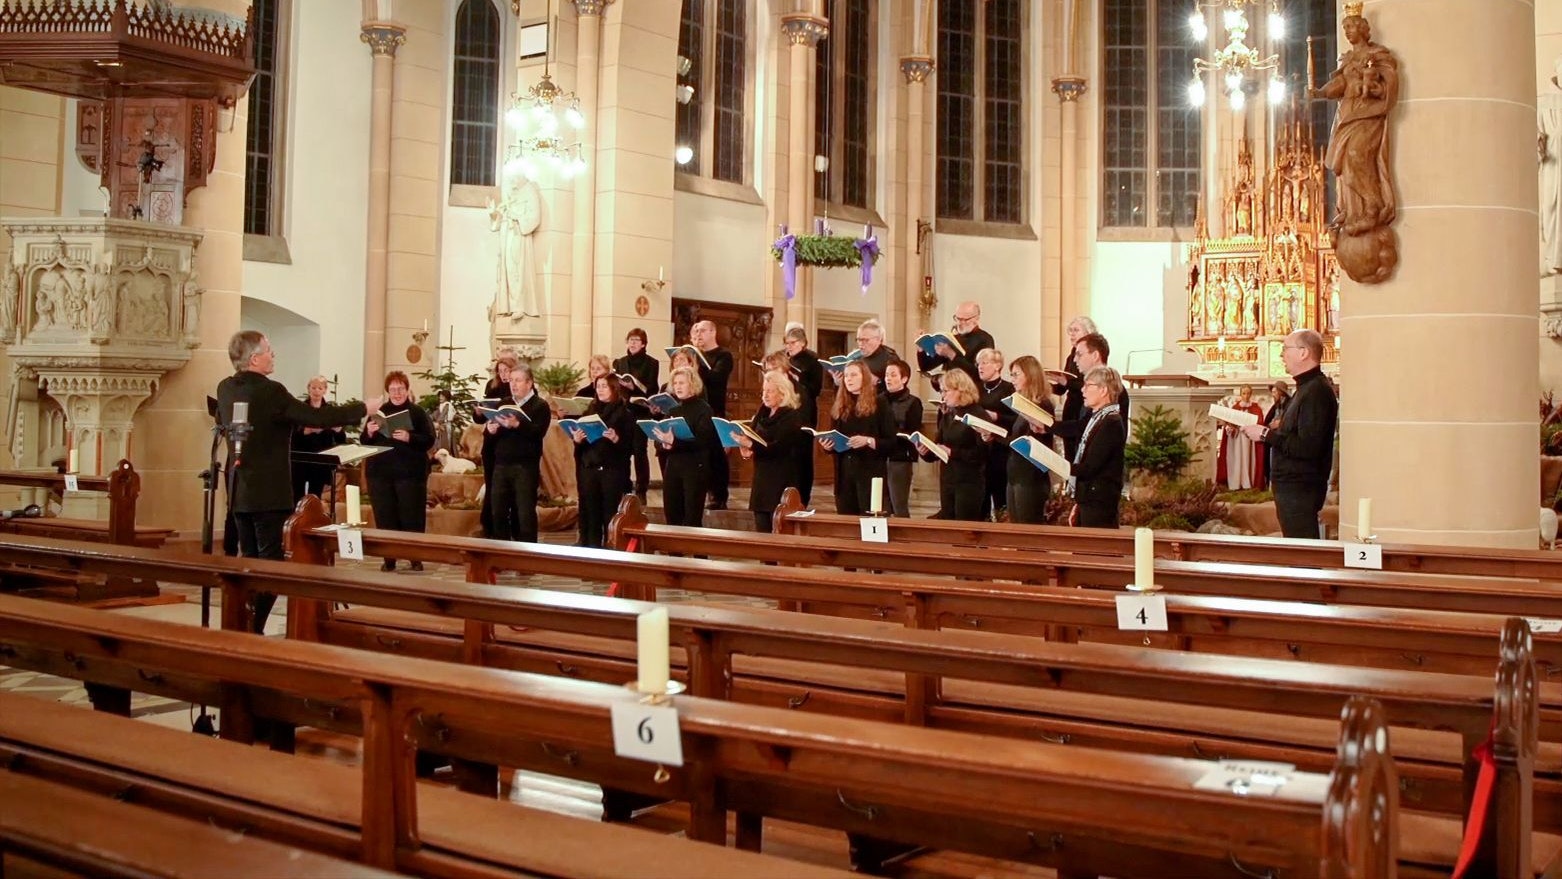 Leere Ränge: Als das Weihnachtsoratorium ausfallen musste, hat der Motettenchor in der St.-Marien-Kirche in kleiner Besetzung ein Video aufgenommen. Foto: Bley